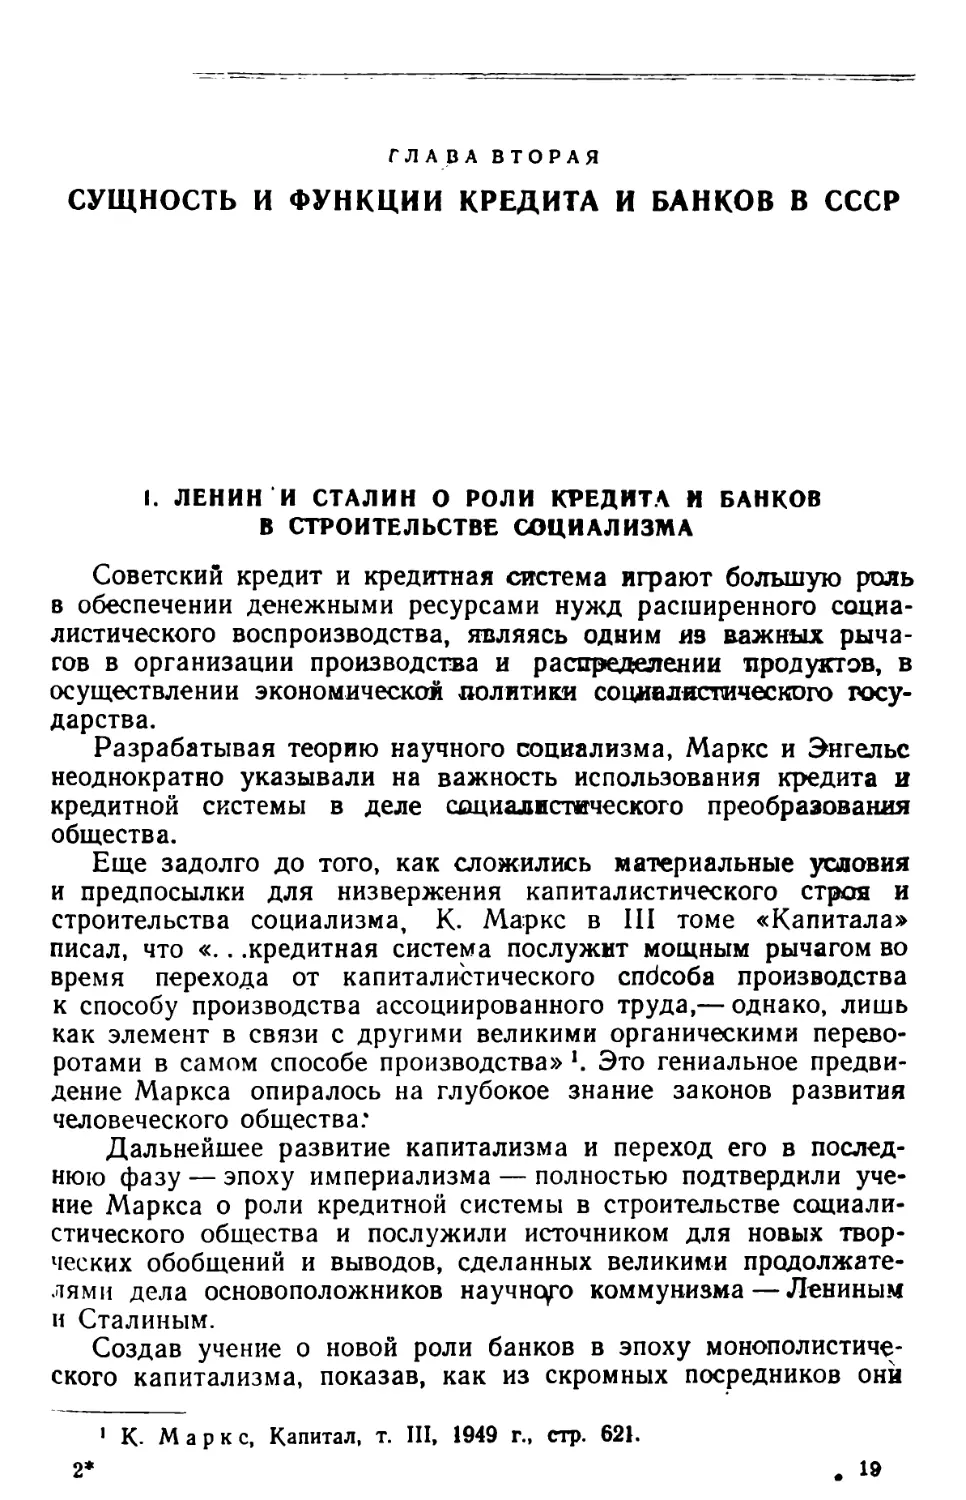 Глава вторая. Сущность и функции кредита и банков в СССР